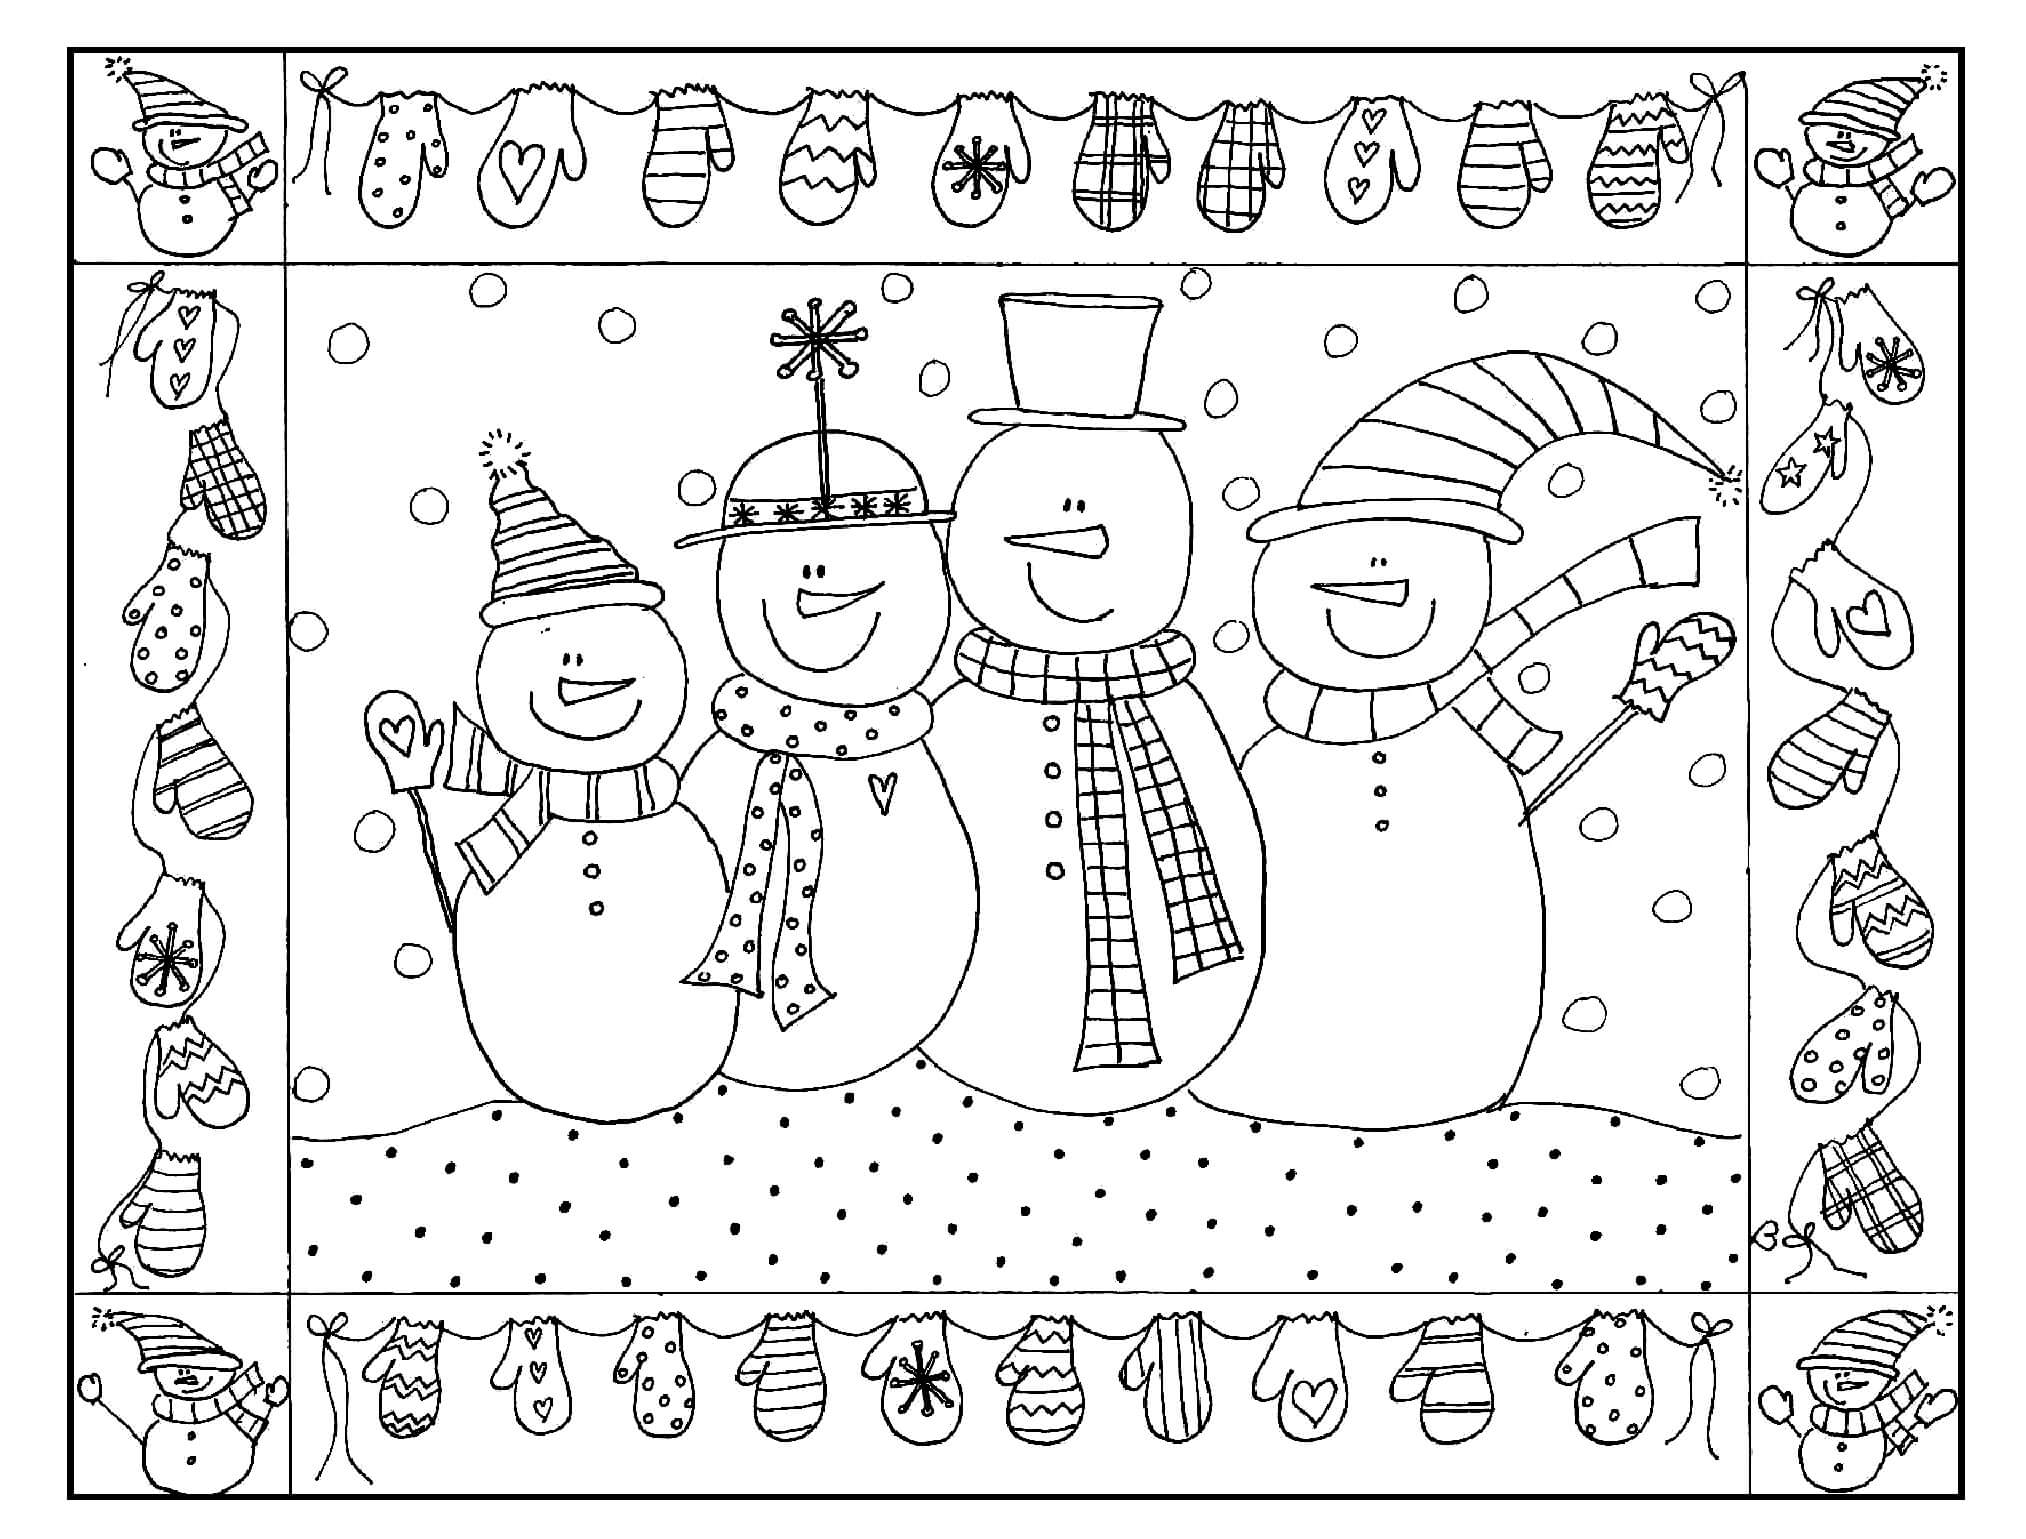 Раскраска Семья снеговиков